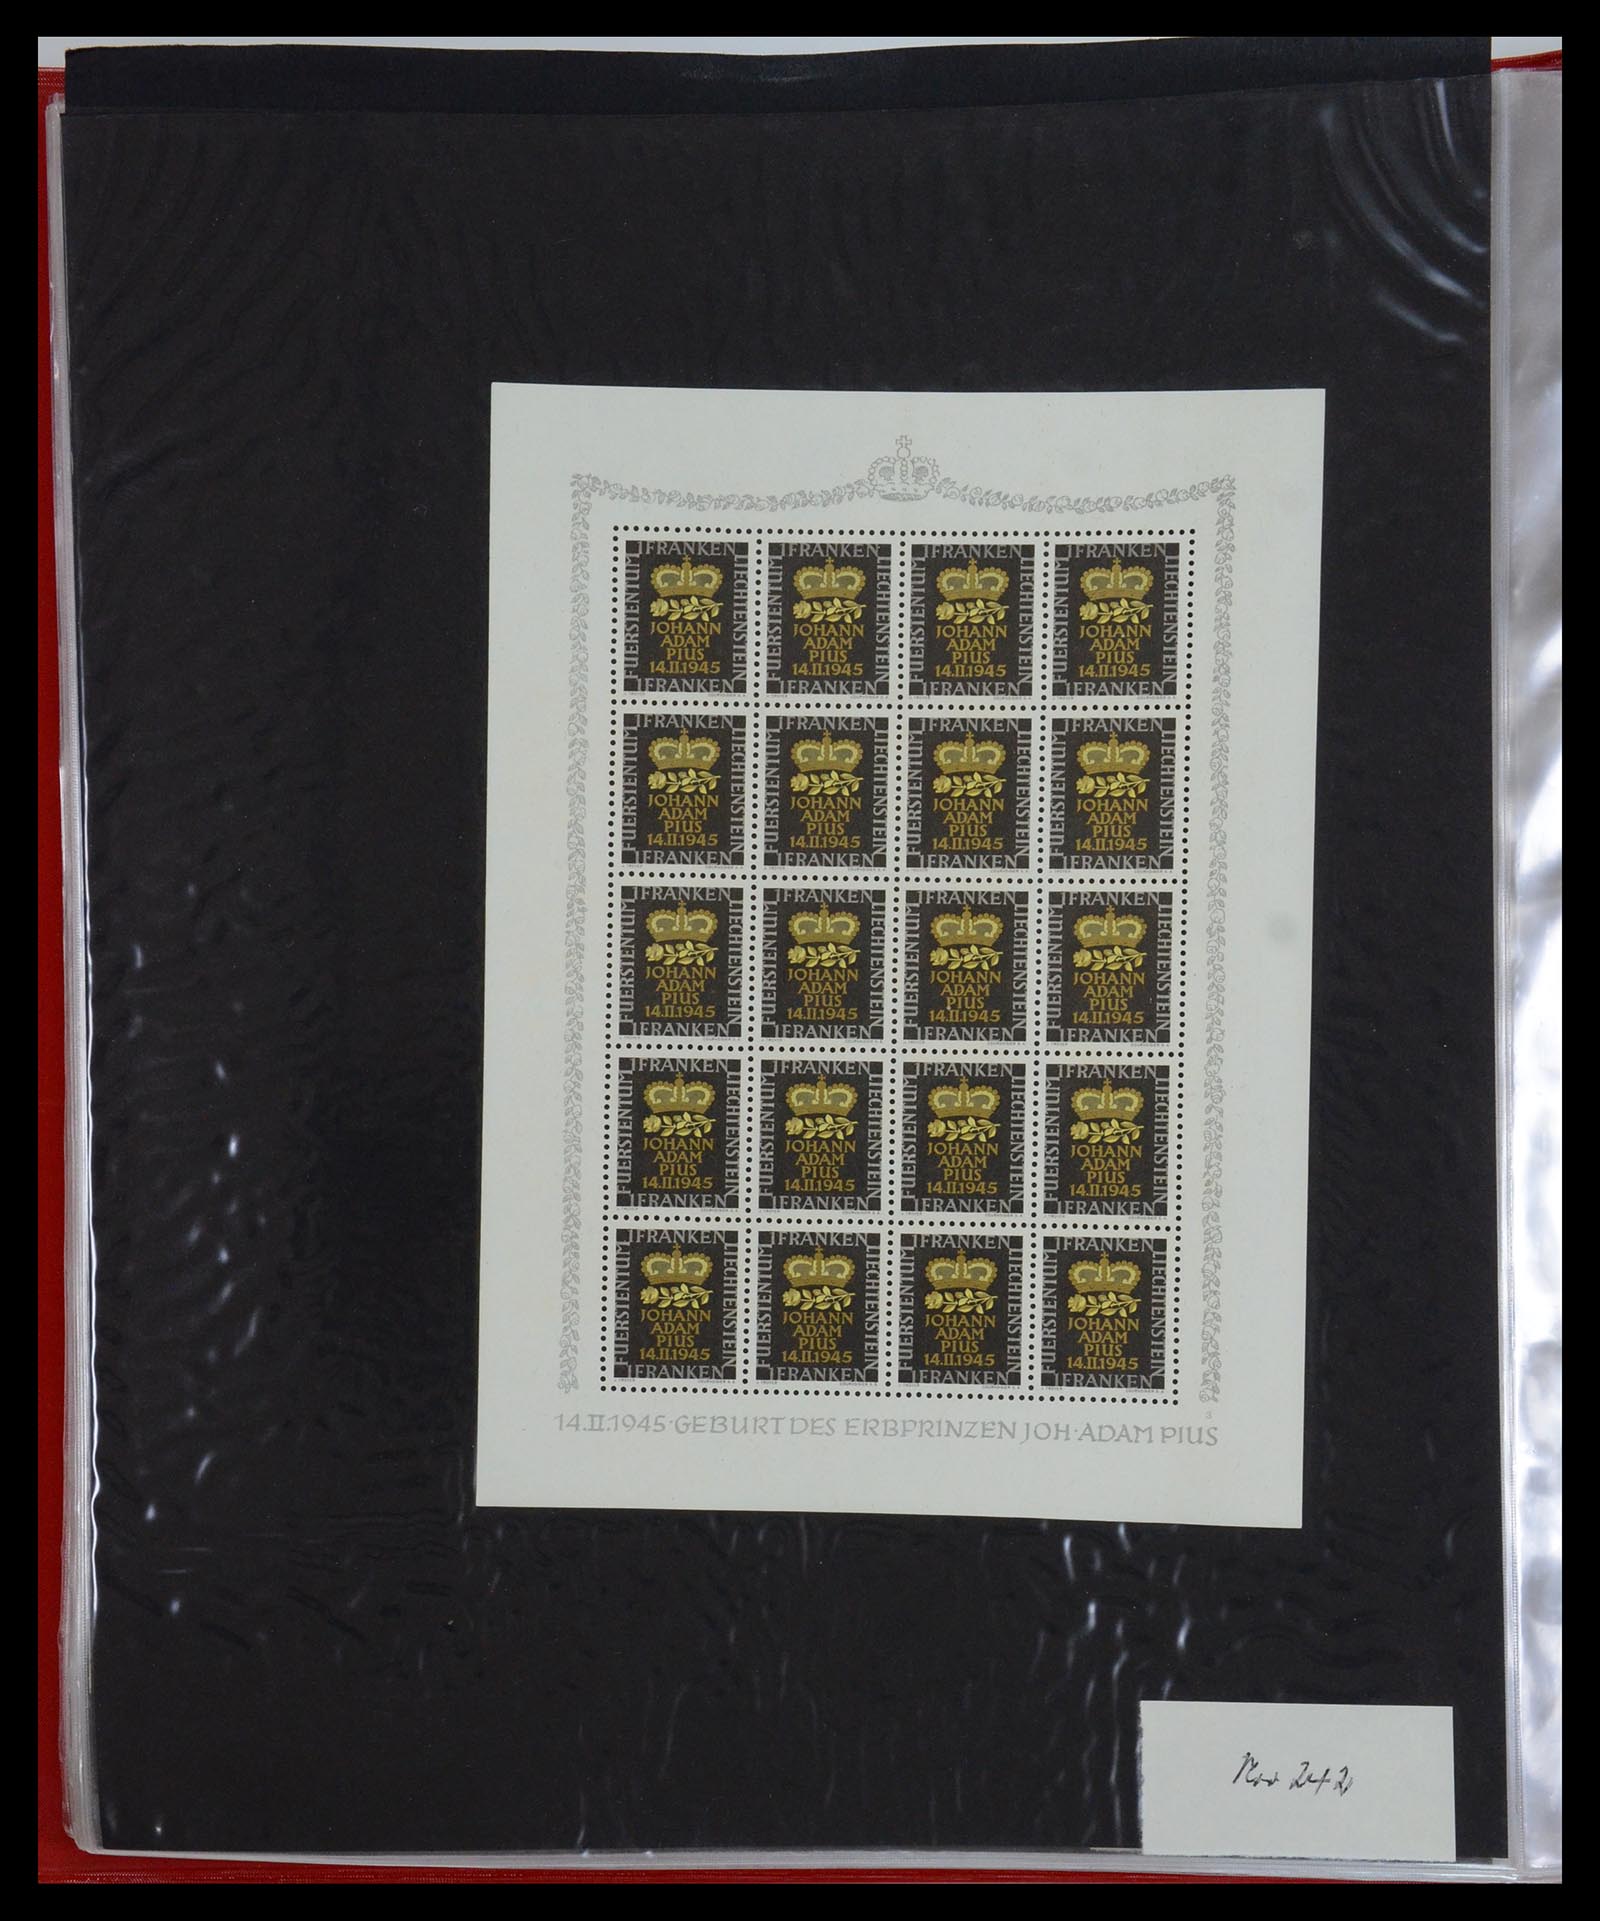 36280 040 - Stamp collection 36280 Liechtenstein souvenir sheets and sheetlets 1934-